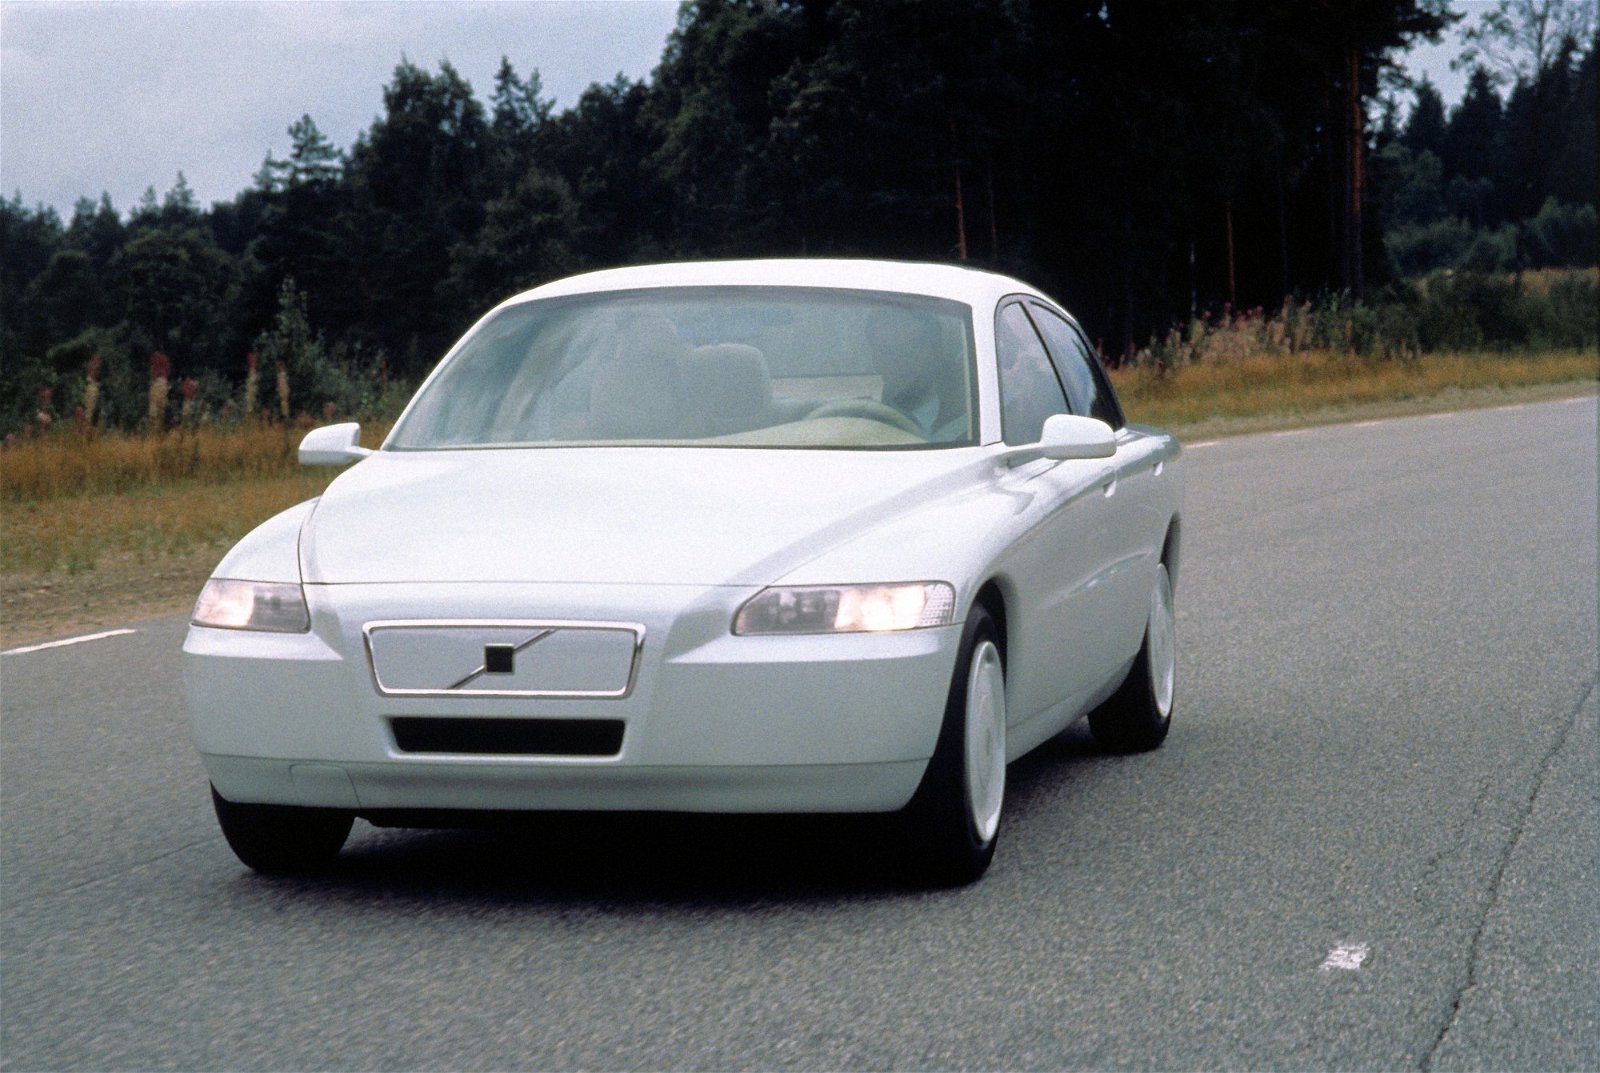 彼得赫博利在1992年开始领军设计ECC概念车，富豪车有了鲜明的腰线、曲面及圆润的前脸，正式挥别了“方盒子”车身时代。